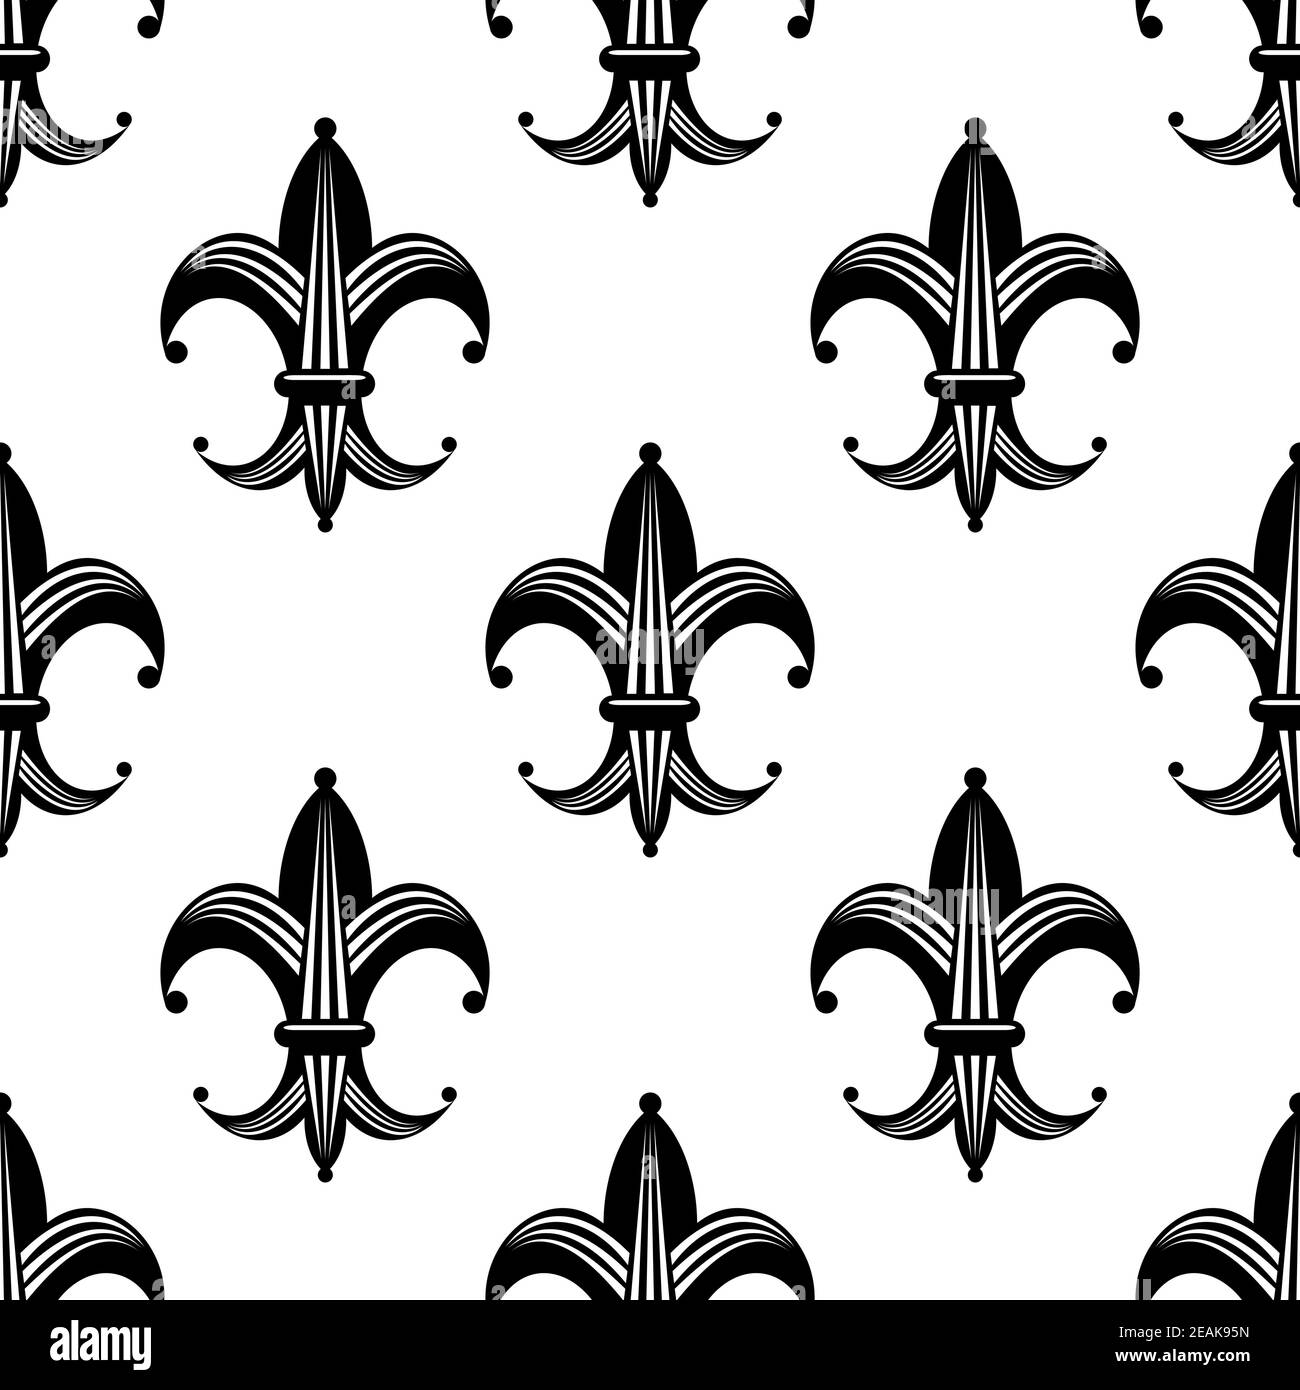 Un audace motivo fleur de lys stilizzato e senza cuciture che si ripete motivo bianco e nero in formato quadrato per il design a secco Illustrazione Vettoriale